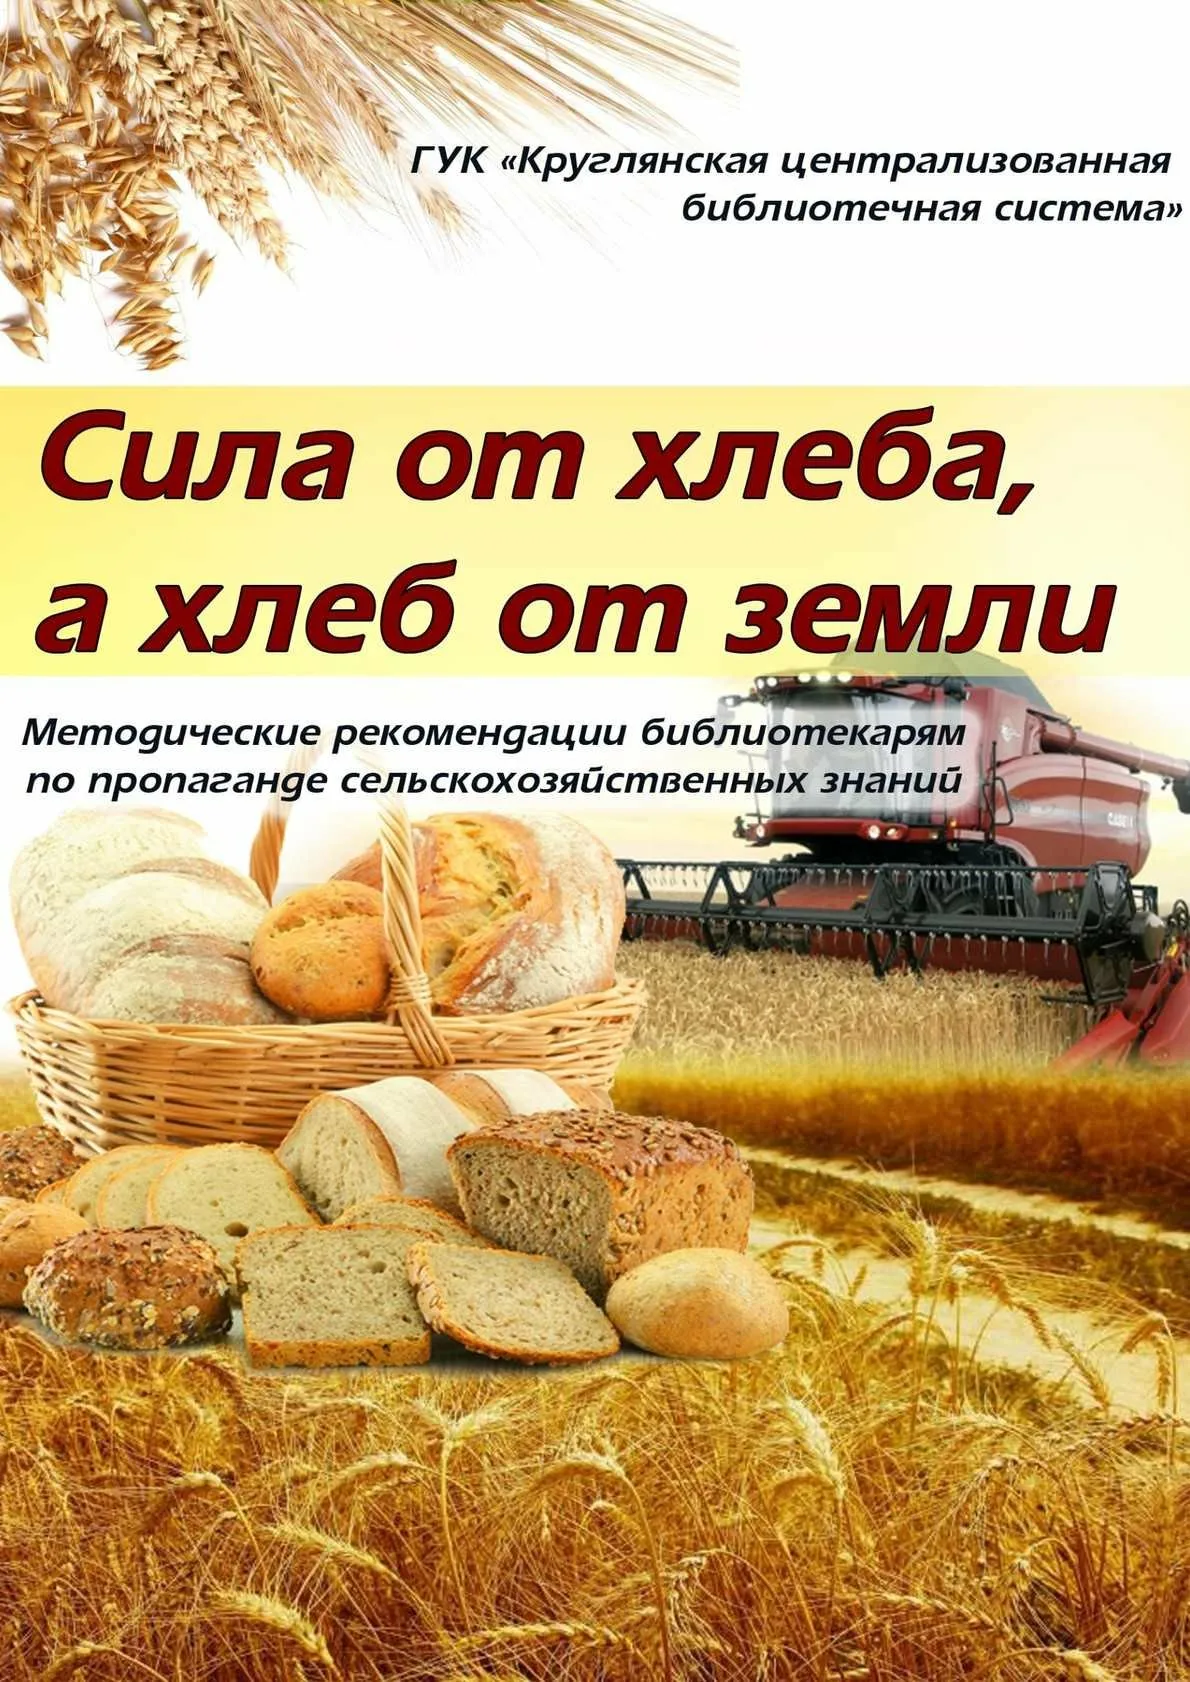 Фото Поздравления с днем работников сельского хозяйства Украины #57